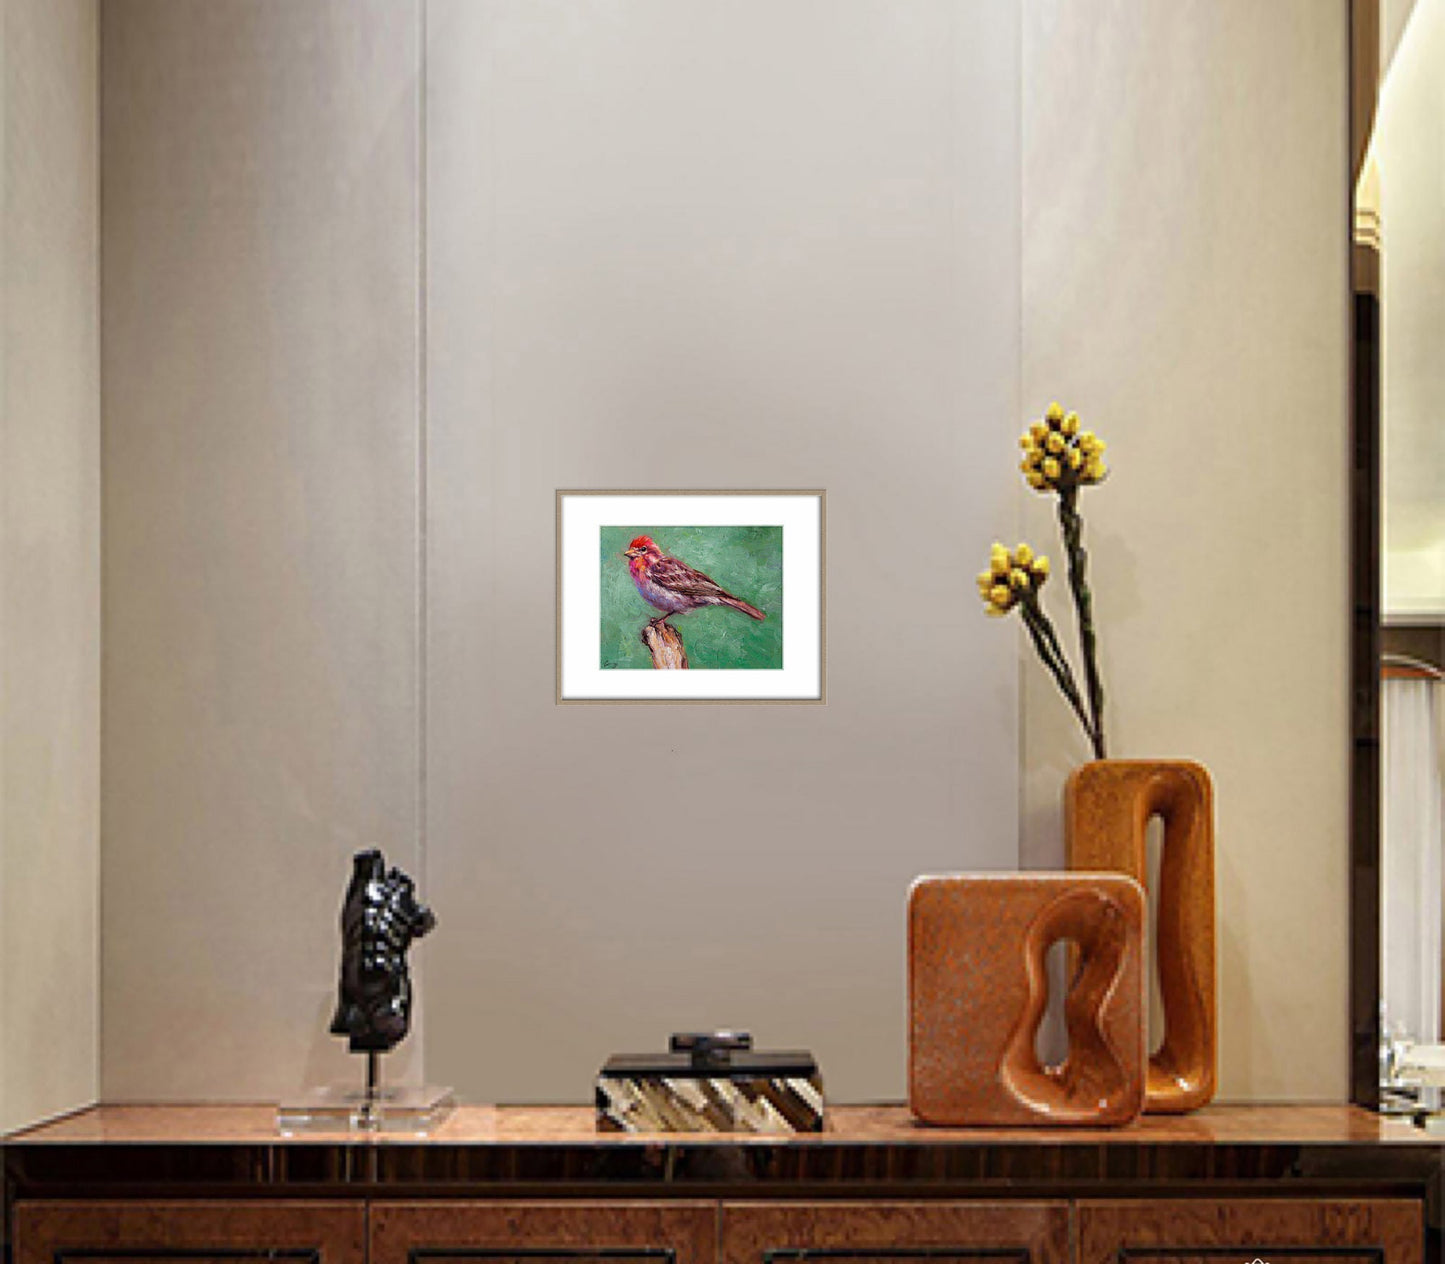 Bird Artwork, Small Oil Painting  Bird House Finch, Oil Painting Original, Painting Abstract, Wall Decor, Living Room Wall Art, Modern Art